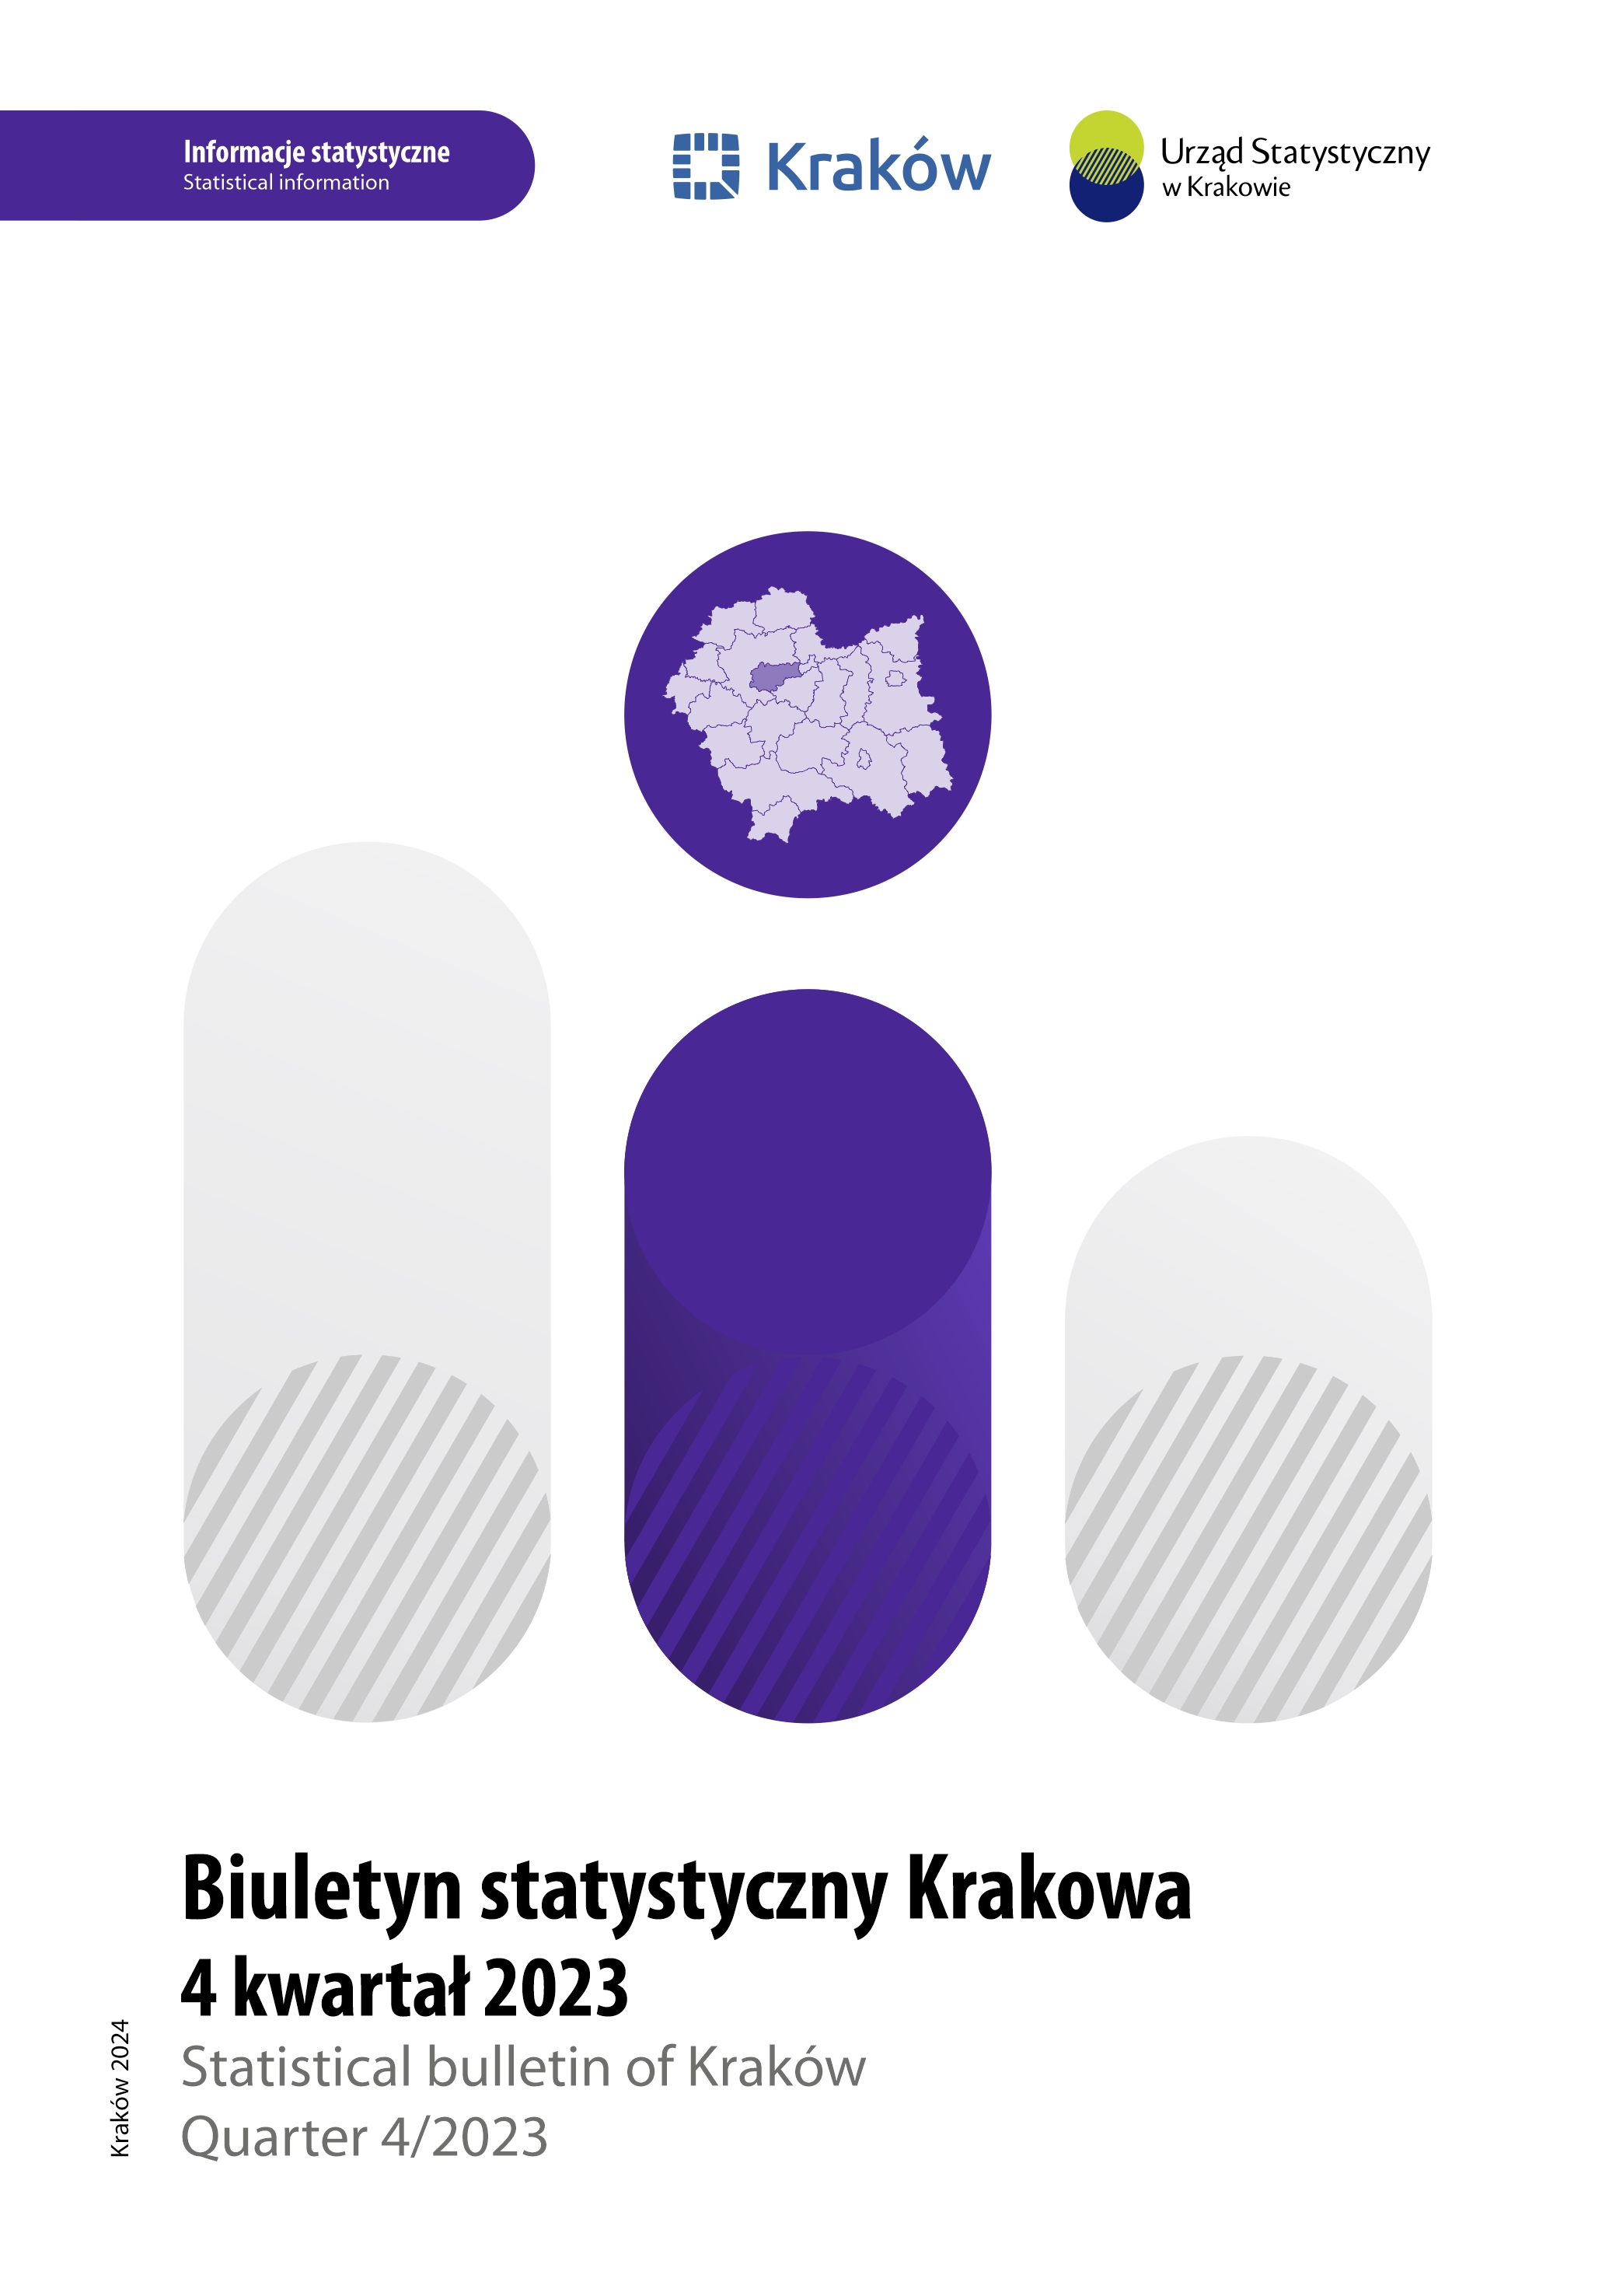 Okładka Biuletynu Statystycznego Miasta Krakowa IV kwartał 2023